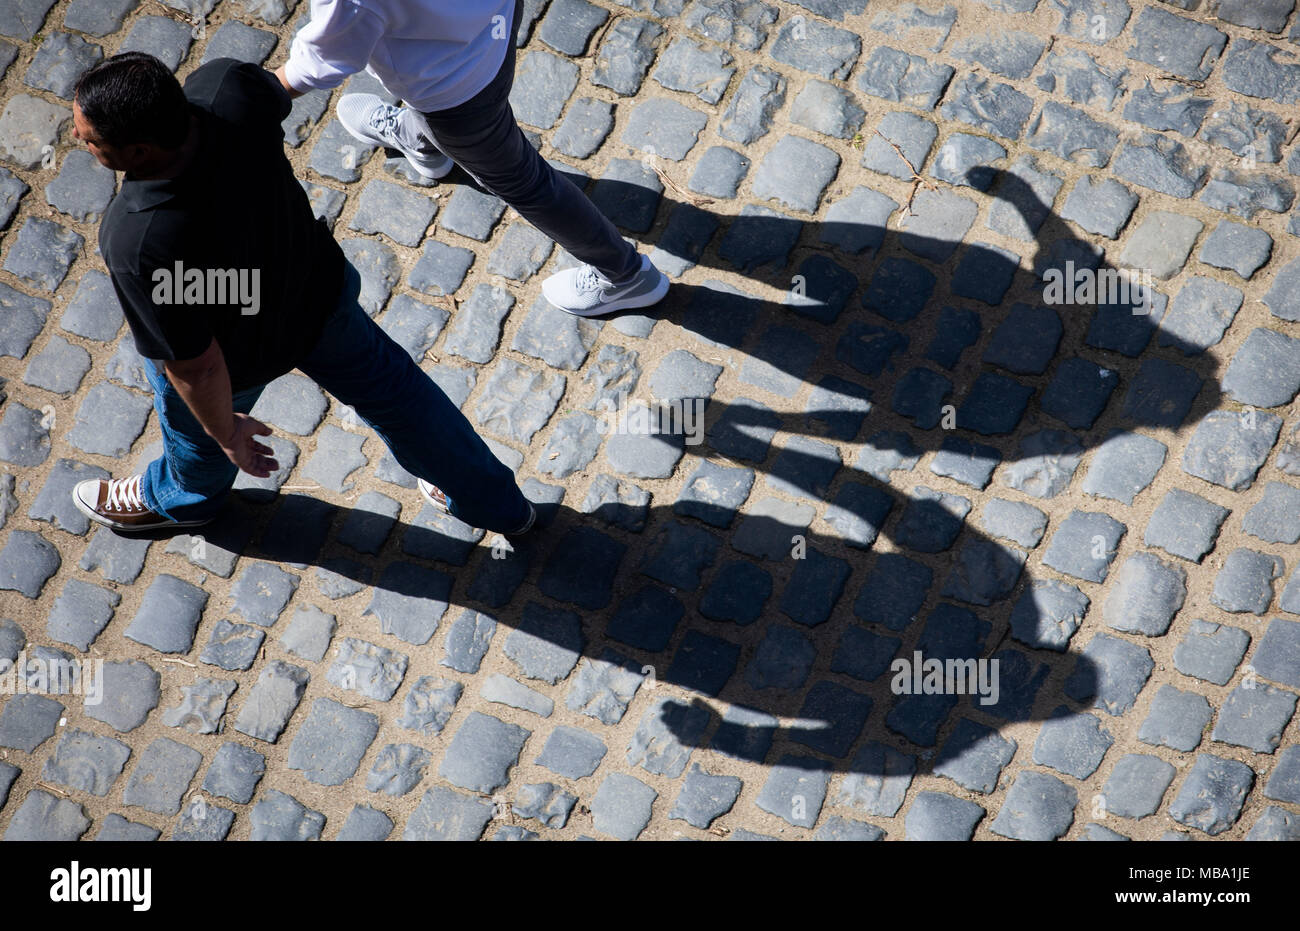 08 avril 2018, l'Allemagne, Bensheim : l'ombre de deux personnes se tenant la main est visible sur le cobblestone autour du château d'Auerbach. Photo : Frank Rumpenhorst/dpa Banque D'Images